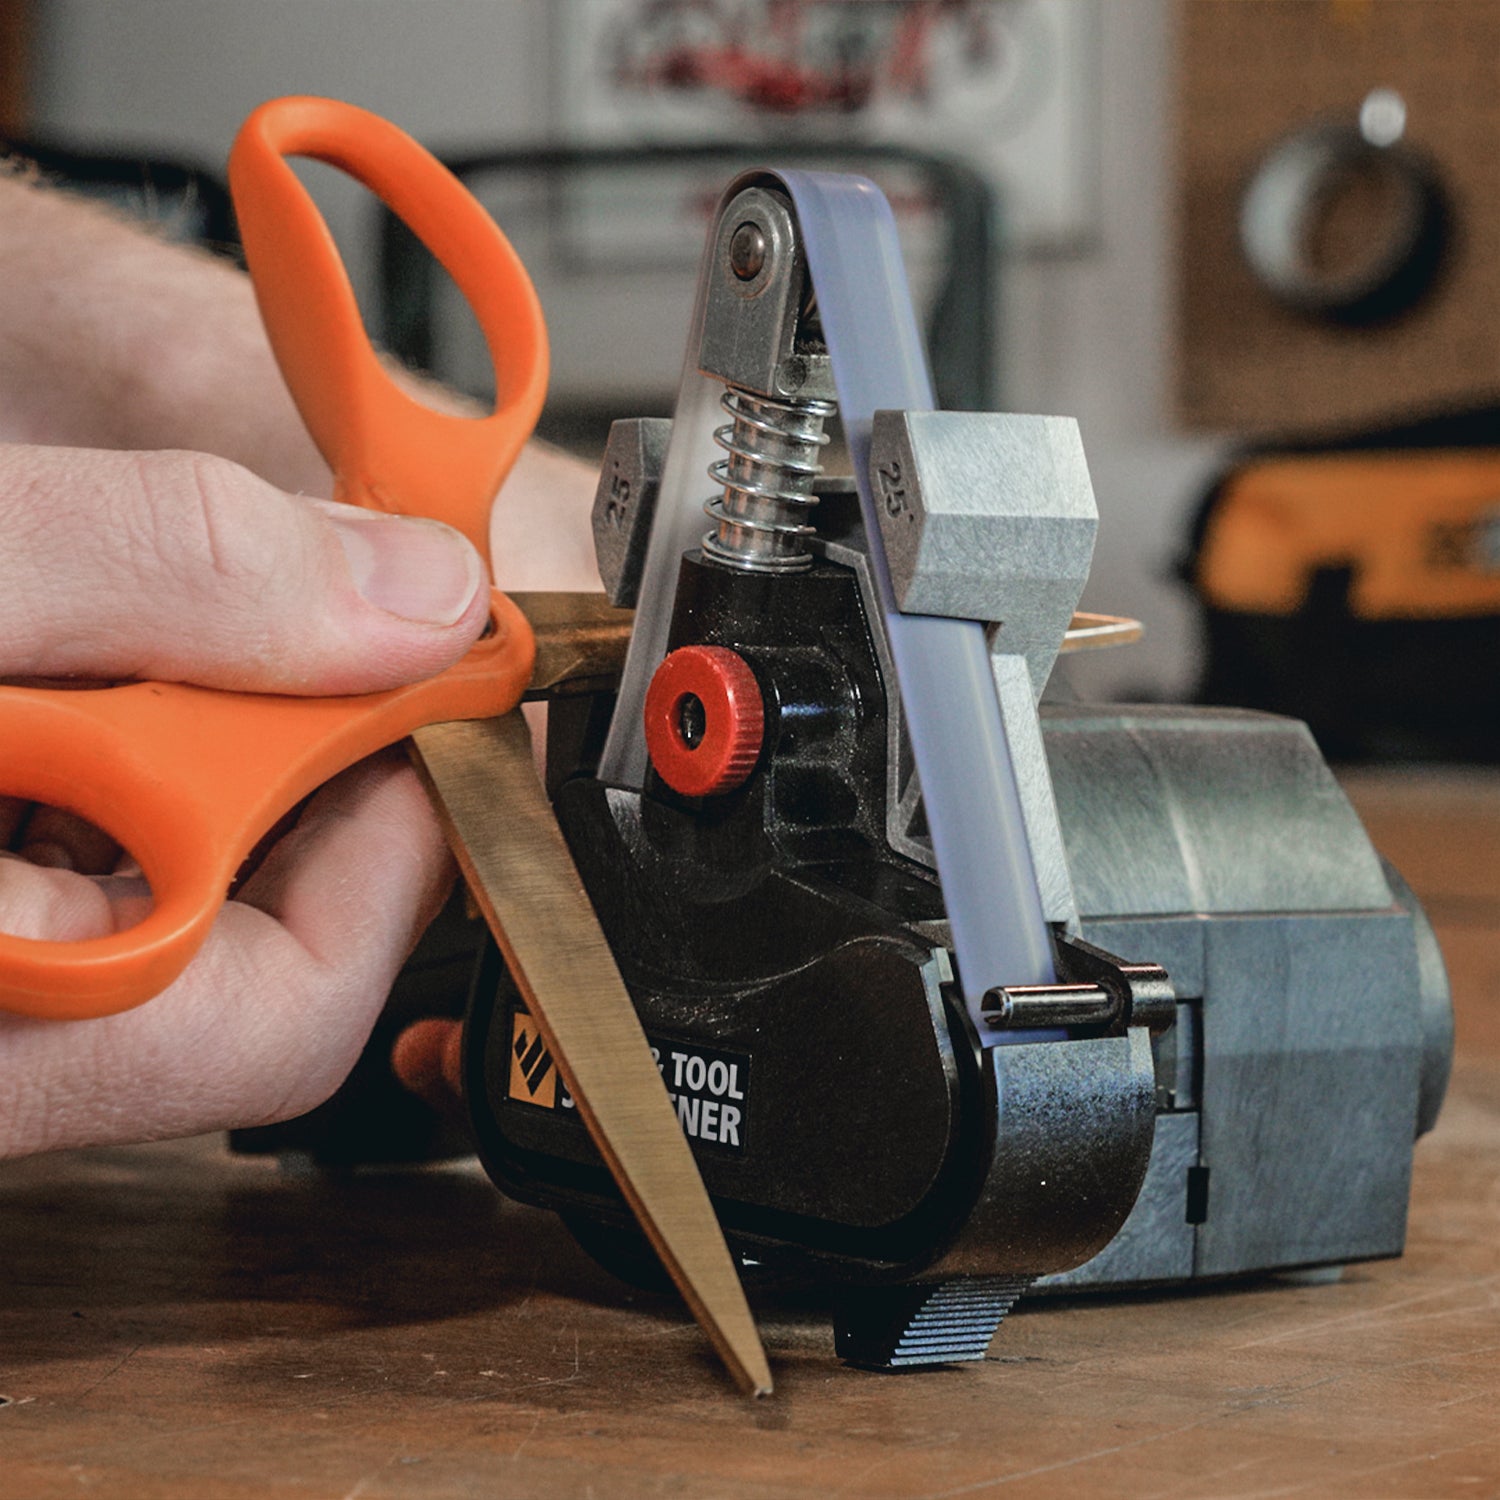 How to Sharpen Scissors - Work Sharp Sharpeners